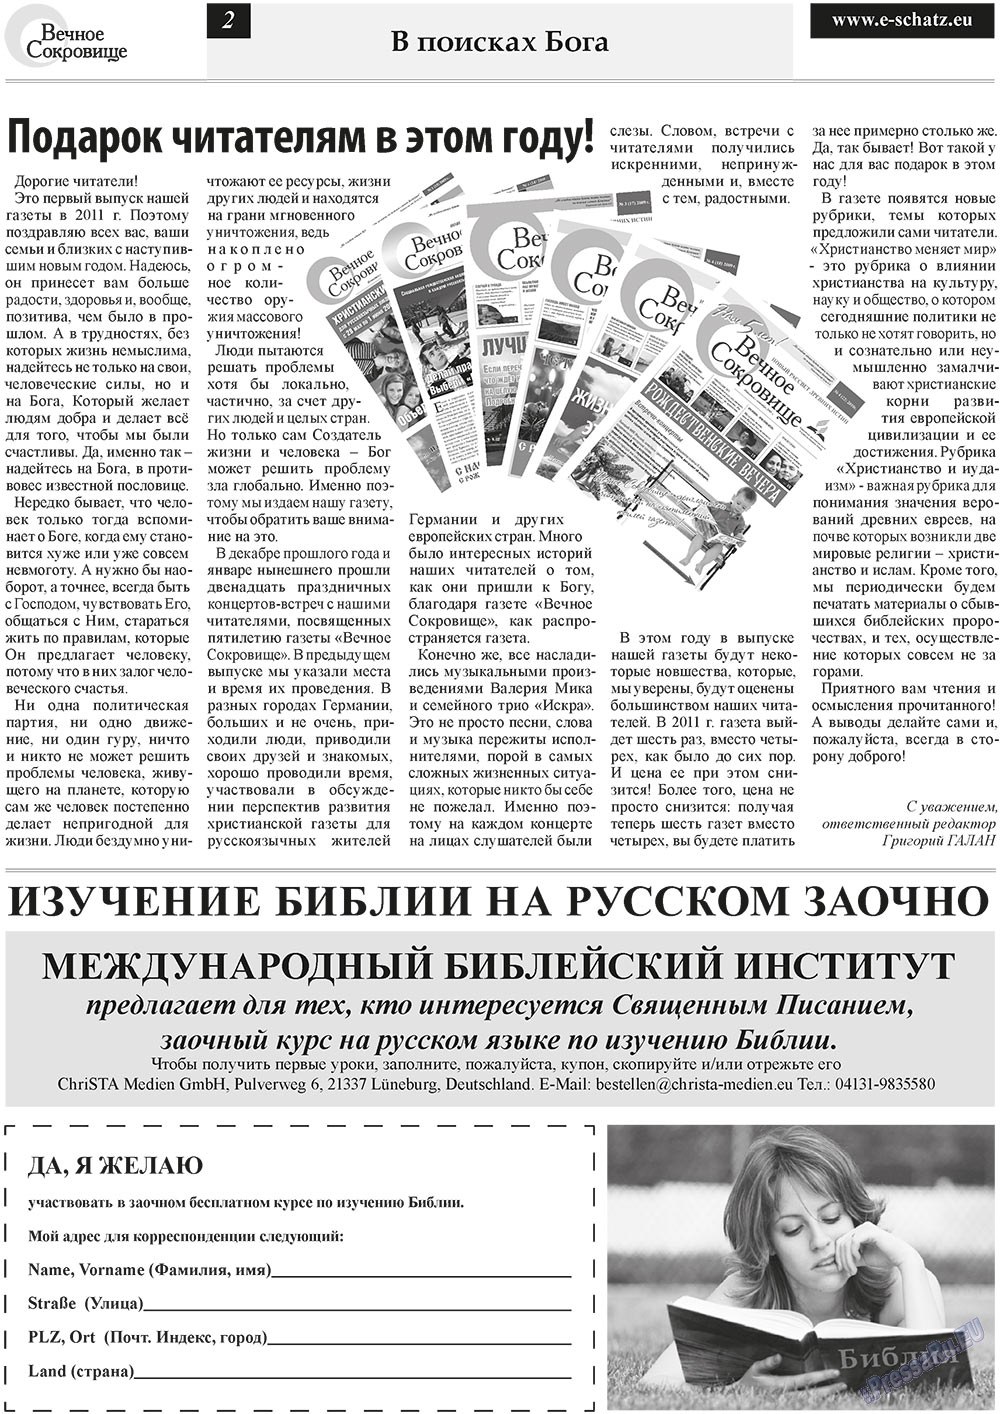 Вечное сокровище, газета. 2011 №1 стр.2